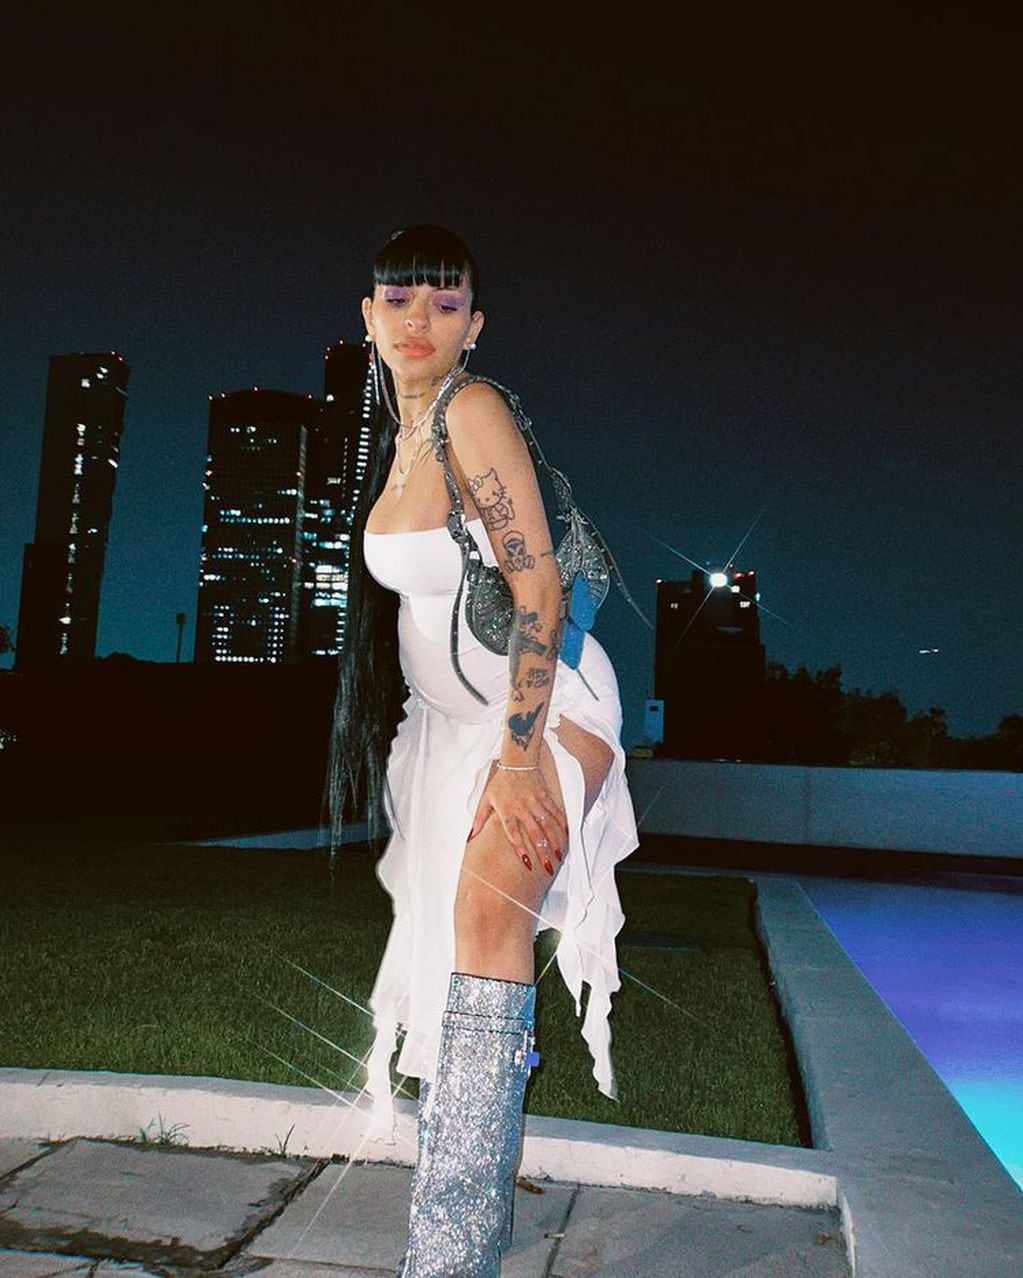 Cazzu deslumbró en Instagram con un outfit ultra sensual y dejó al descubierto sus tatuajes
